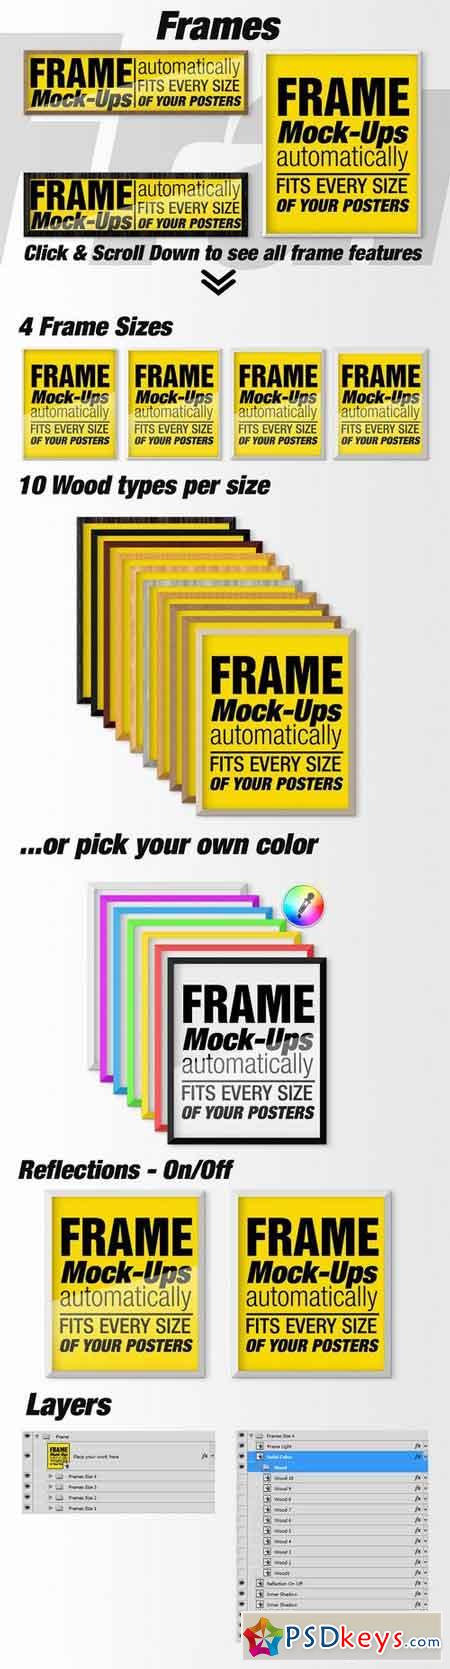 Canvas Mockups - Frames Mockups v 65 1513800 » Free Download Photoshop Vector Stock image Via ...